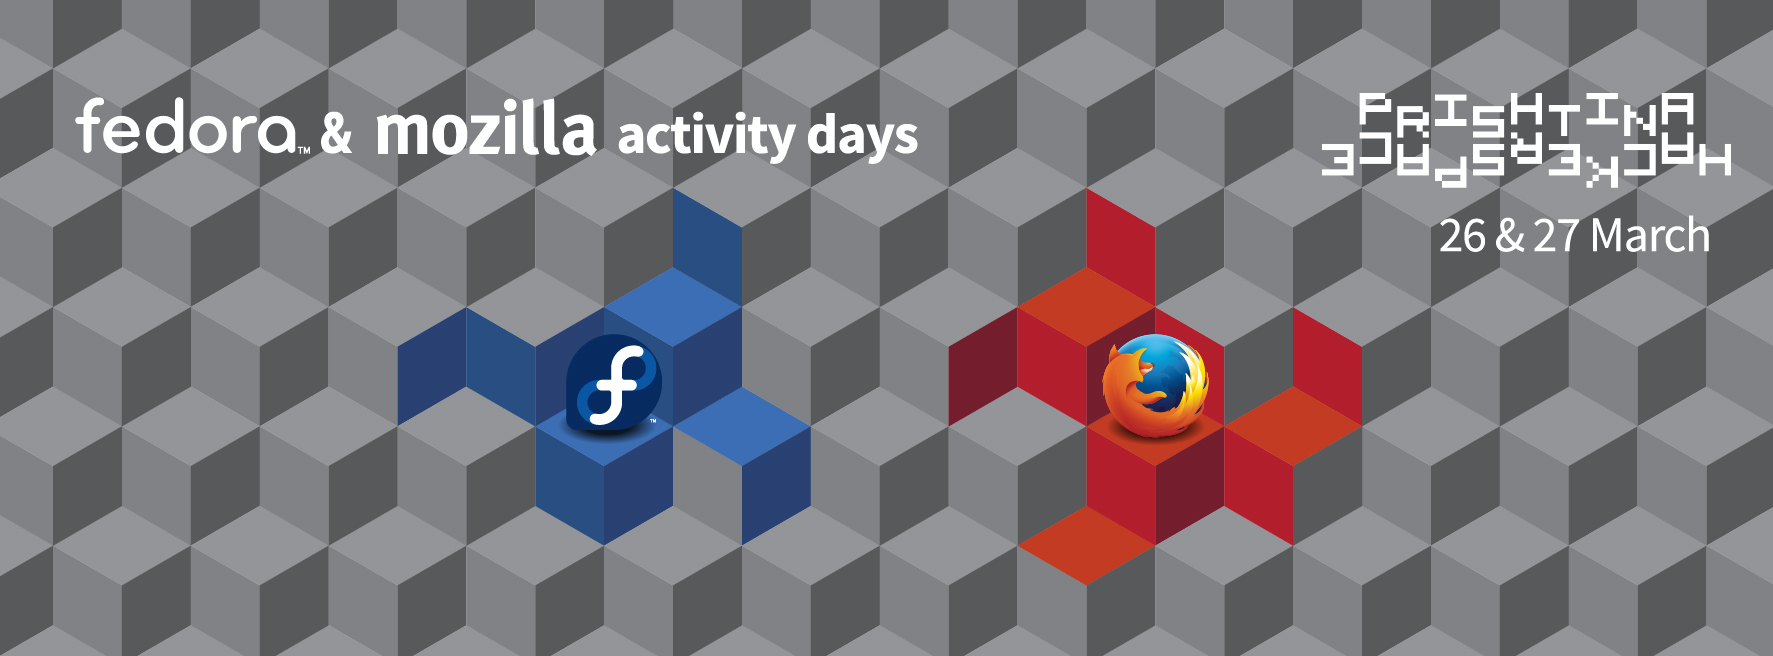 Fedora and Mozilla Activity Days in Prishtina, Kosovo